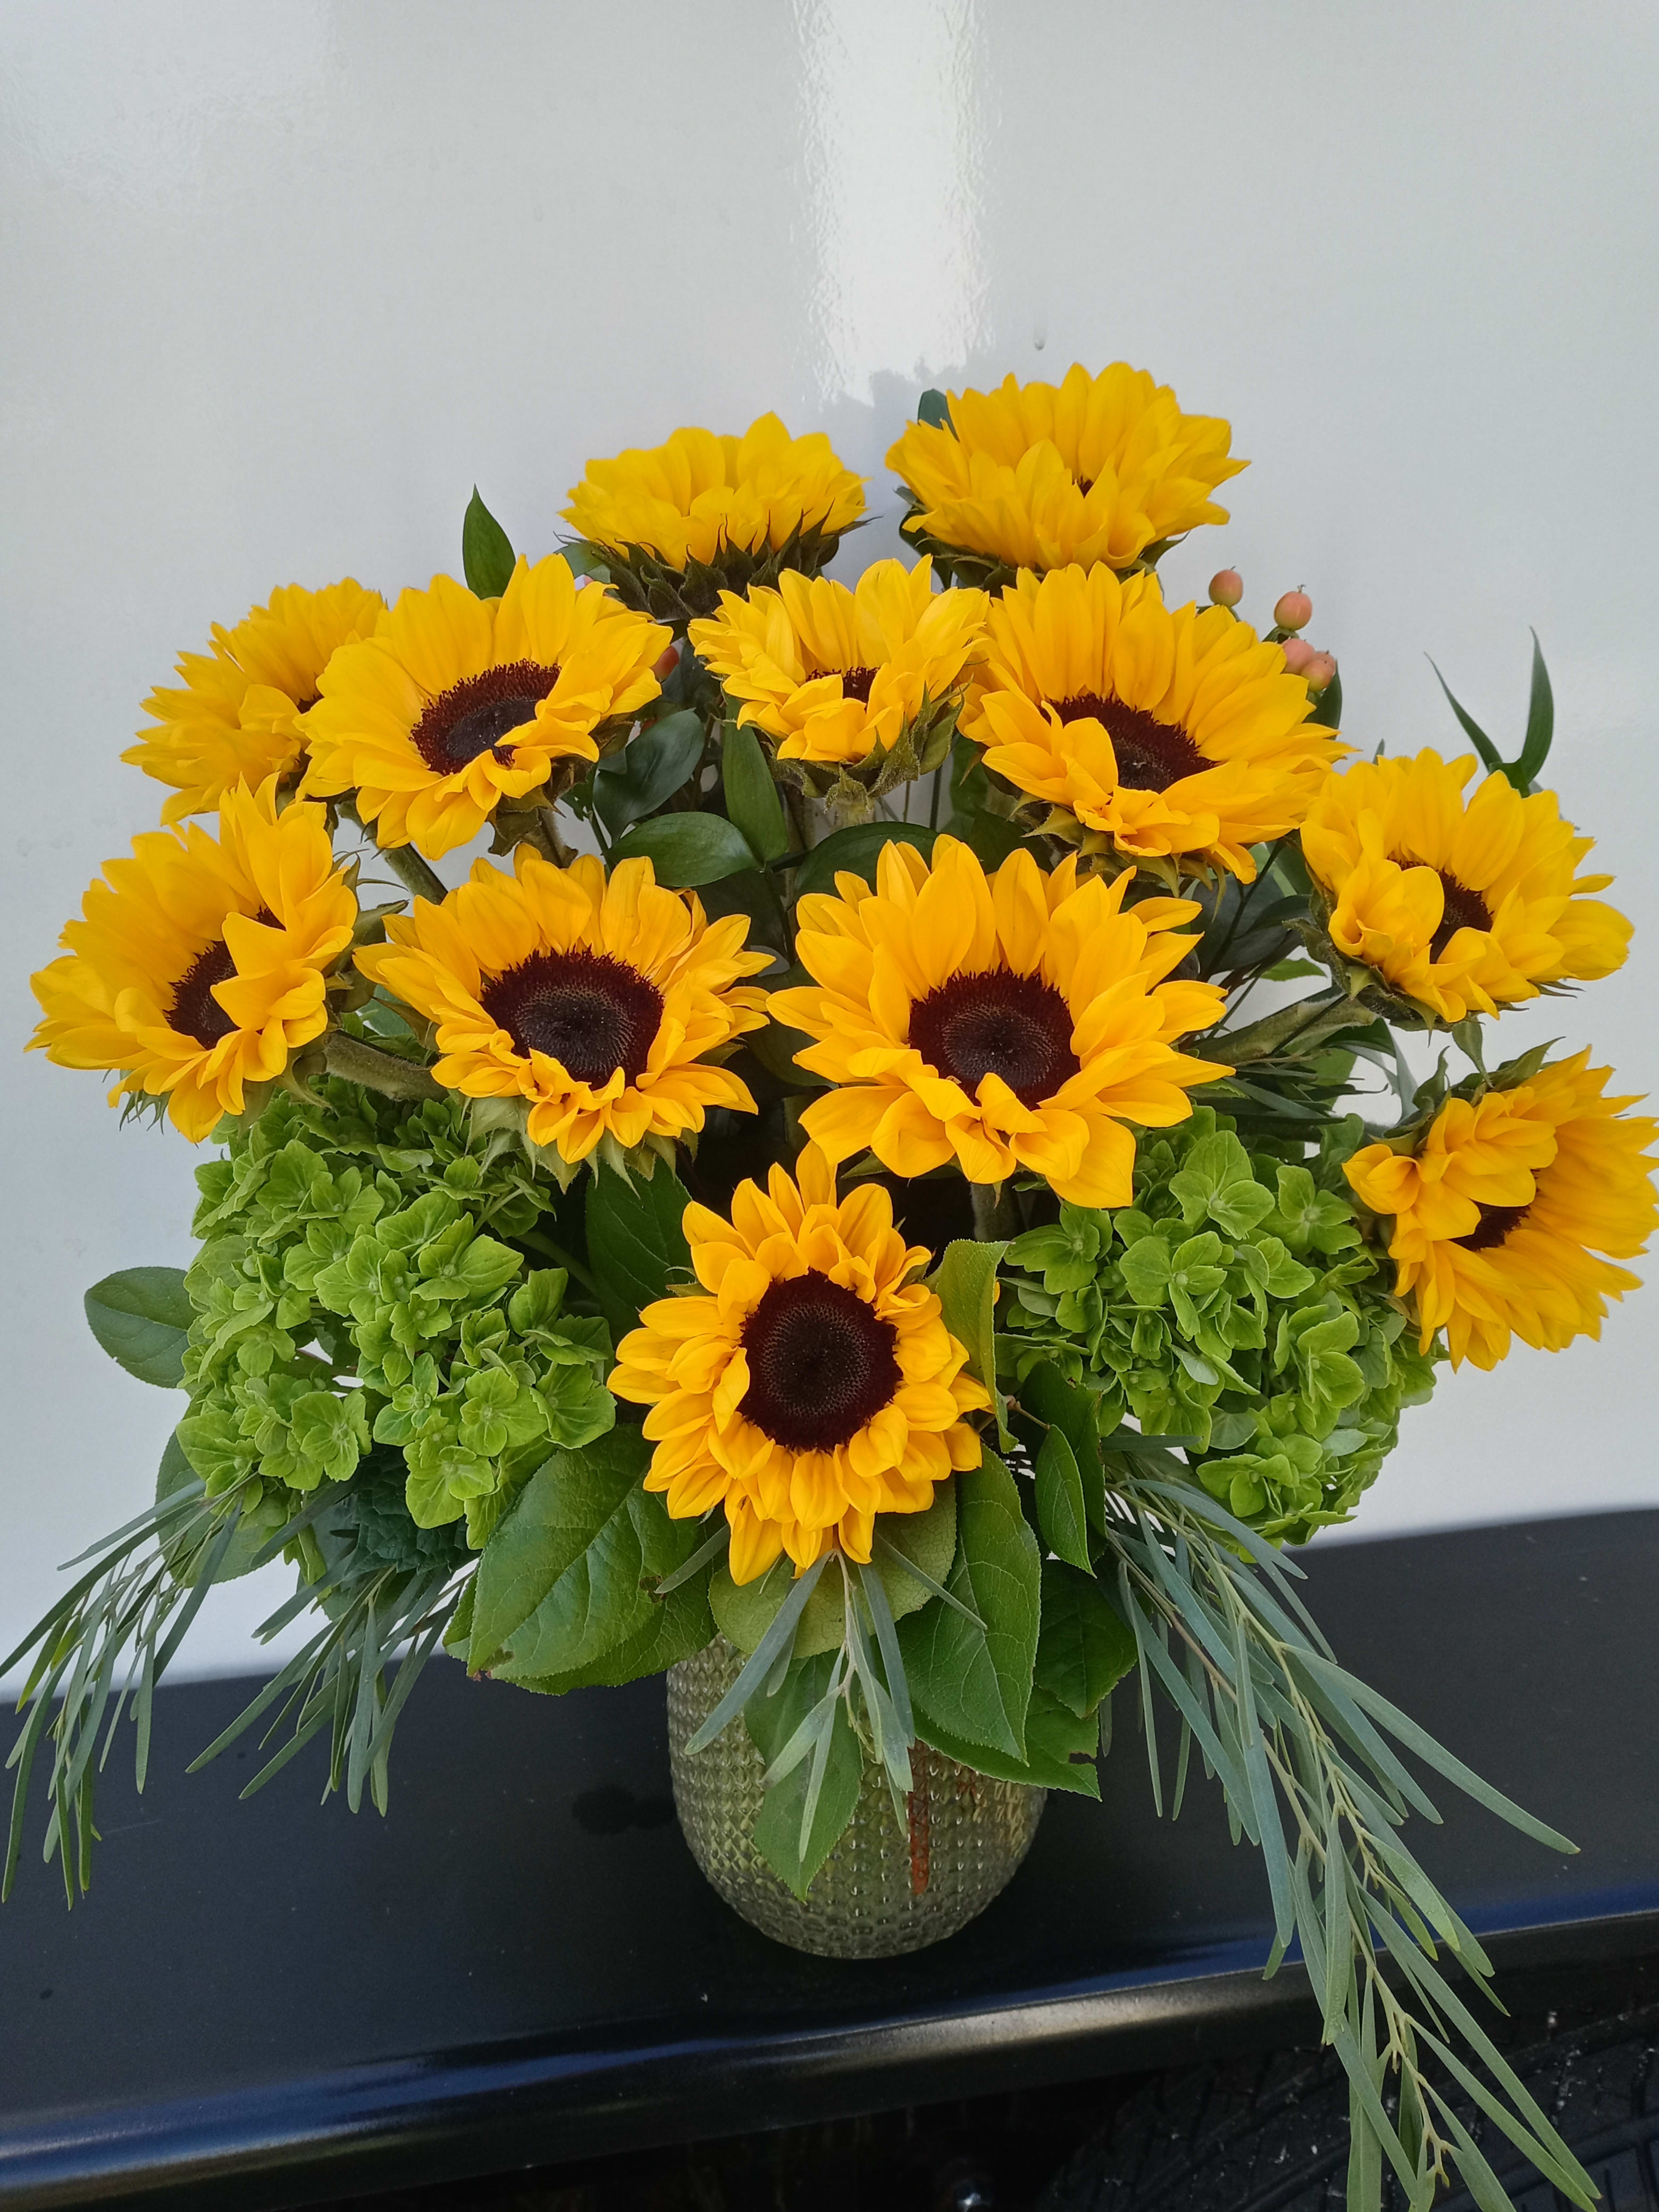 Sunflower Dozen - One dozen sunflowers arranged in a vase,